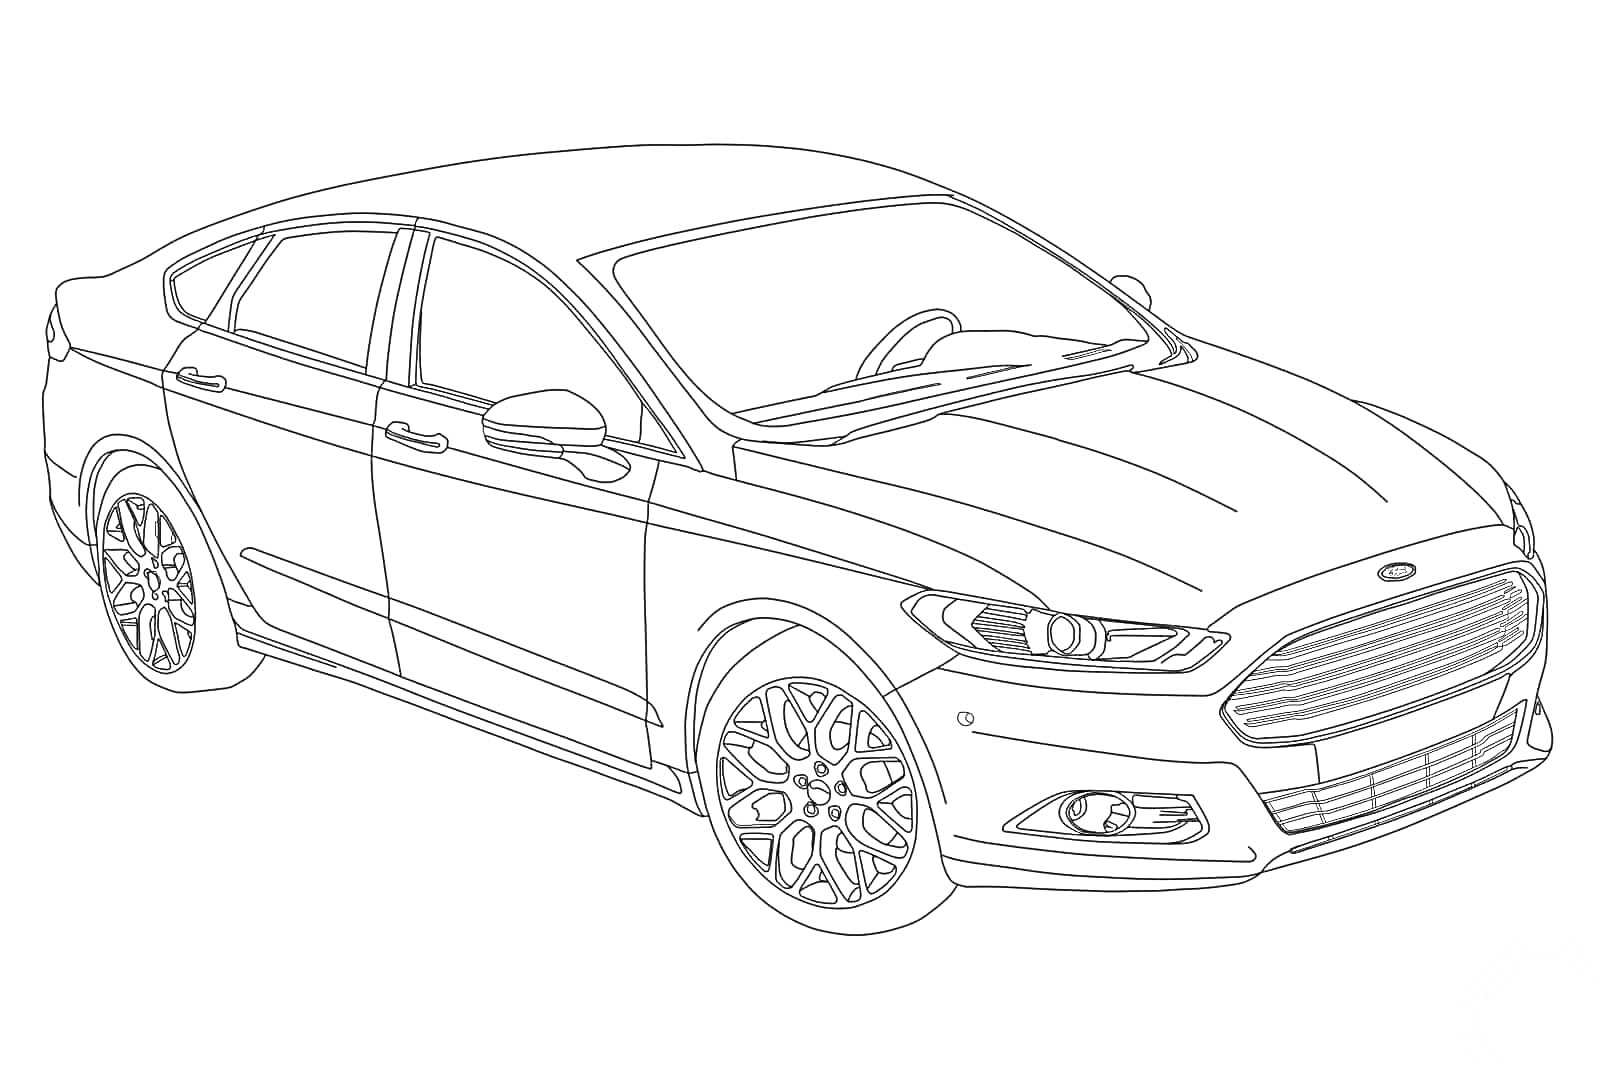 Раскраска Раскраска автомобиля Ford, вид сбоку спереди, видны колеса, двери, стекла, фары и капот